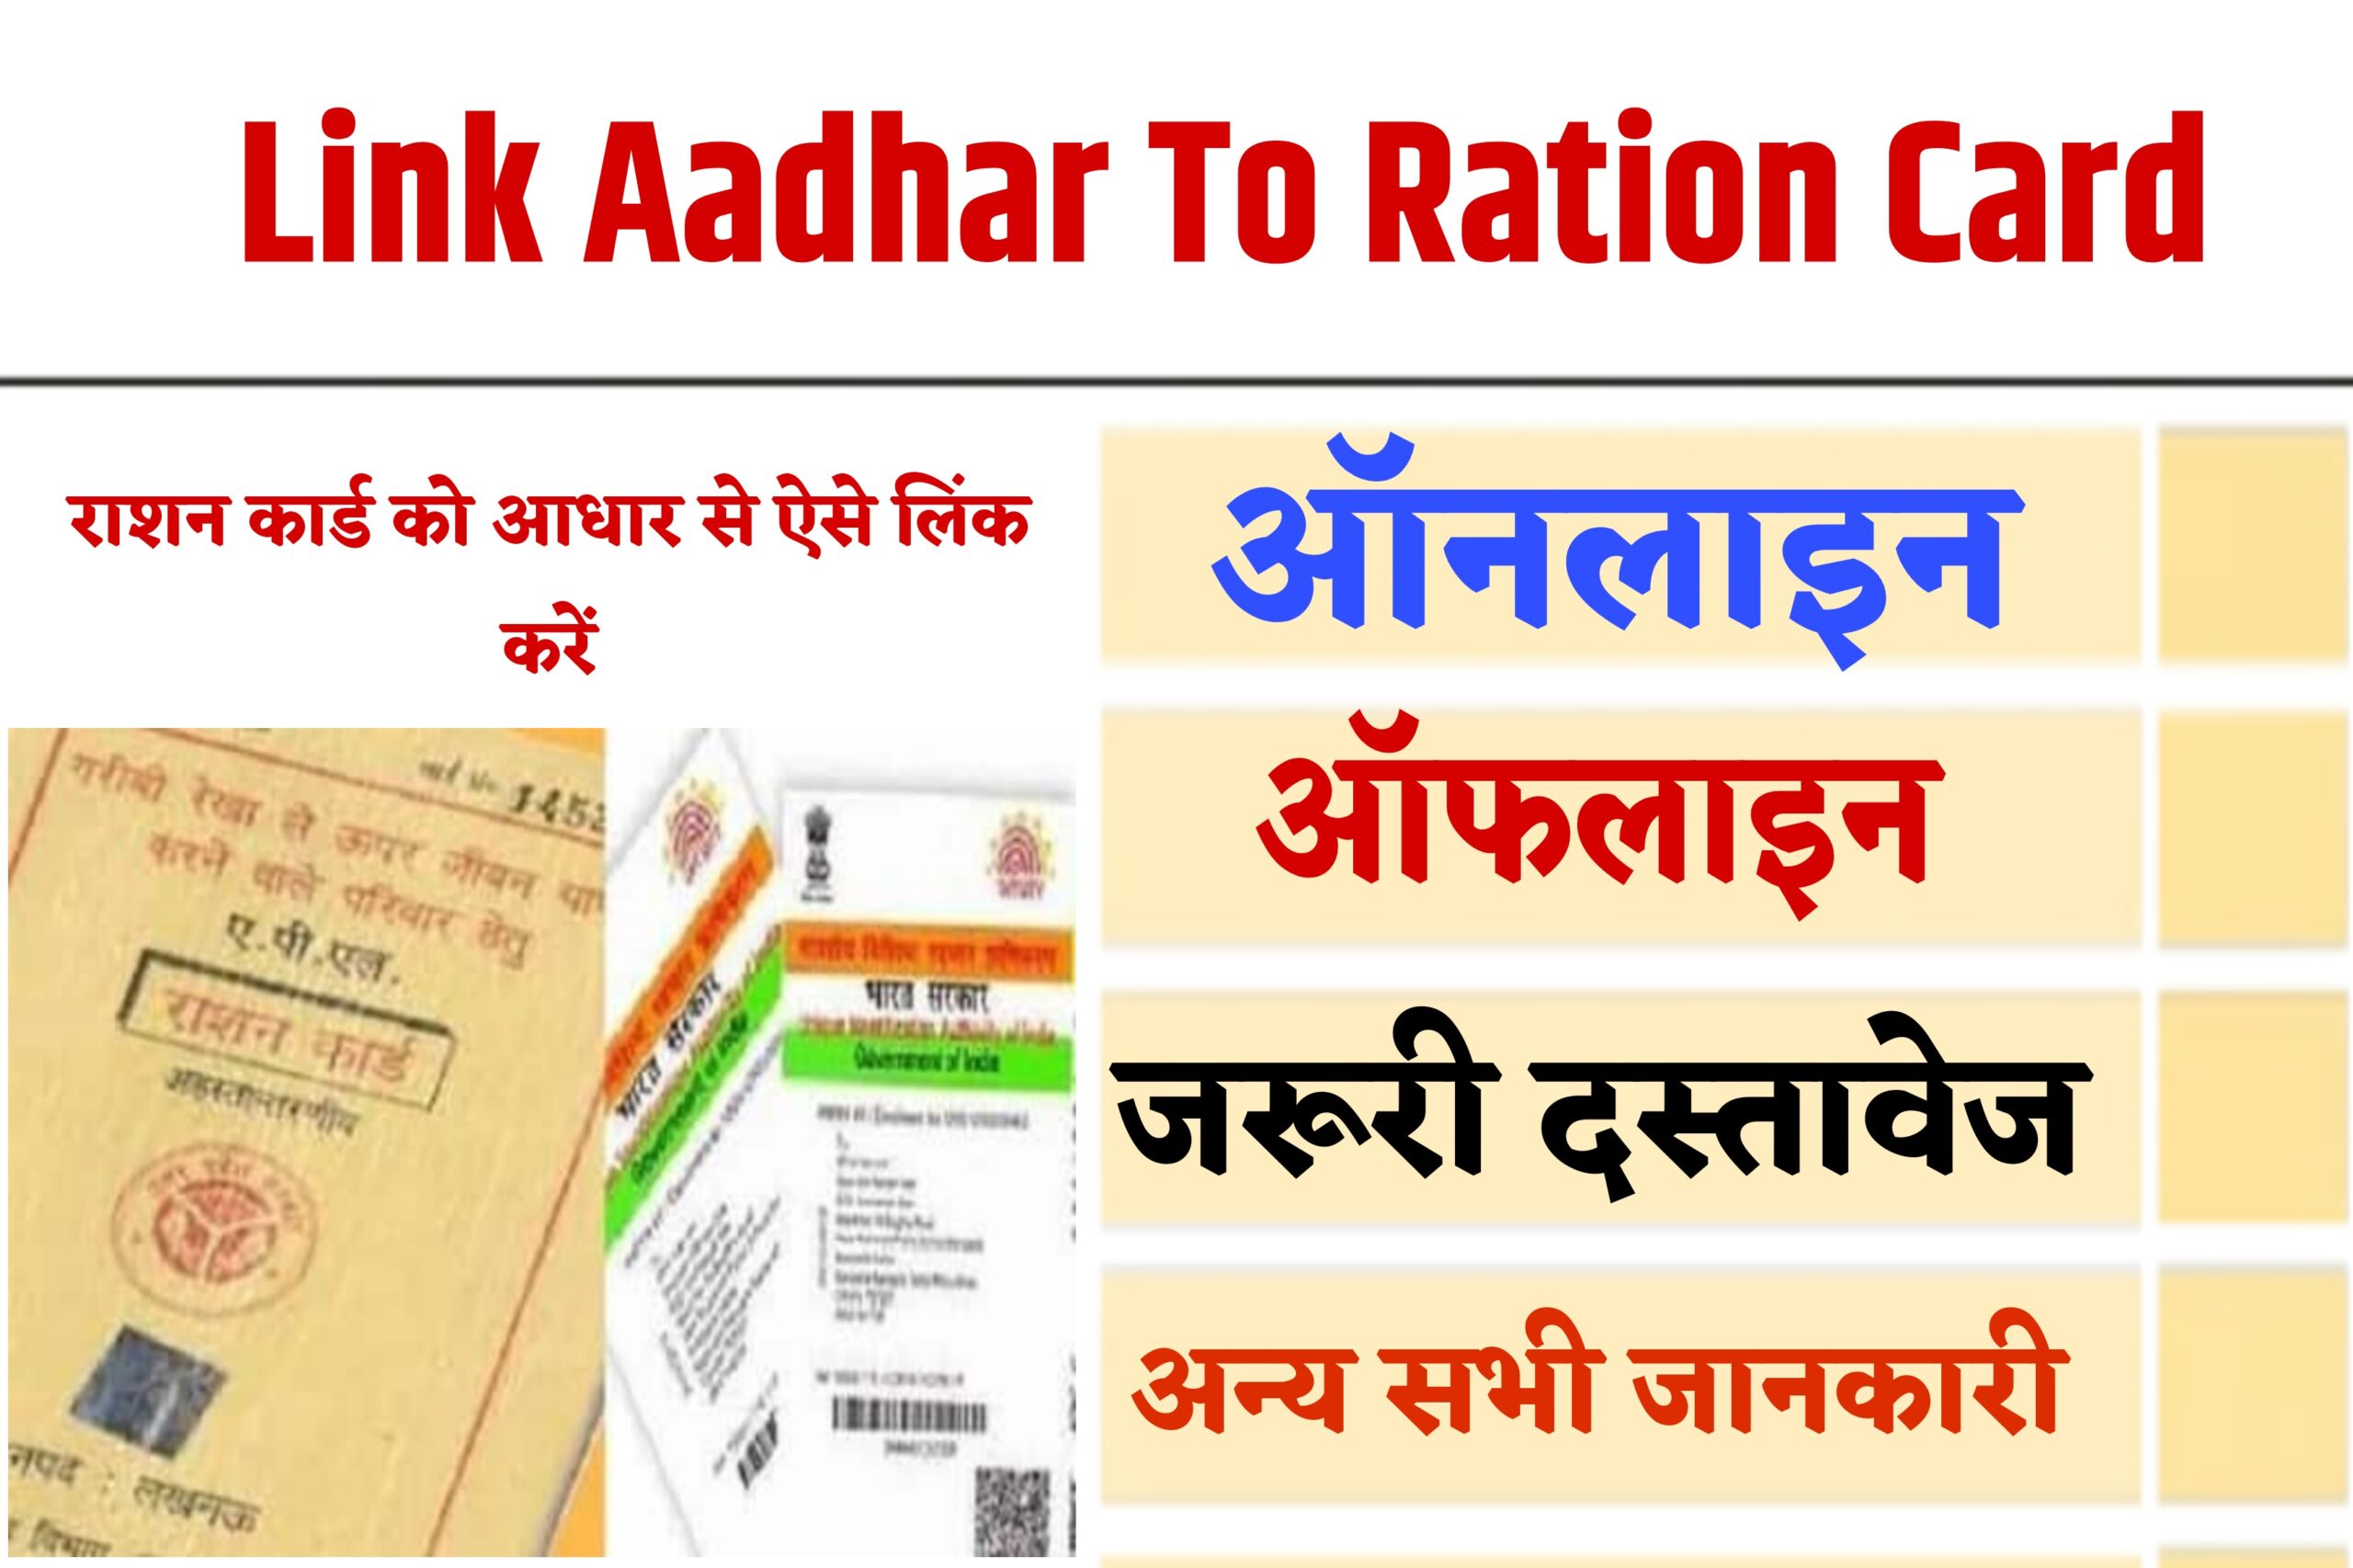 Link Aadhar To Ration Card - राशन कार्ड को आधार से लिंक कैसे करें? जानें पूरी प्रक्रिया